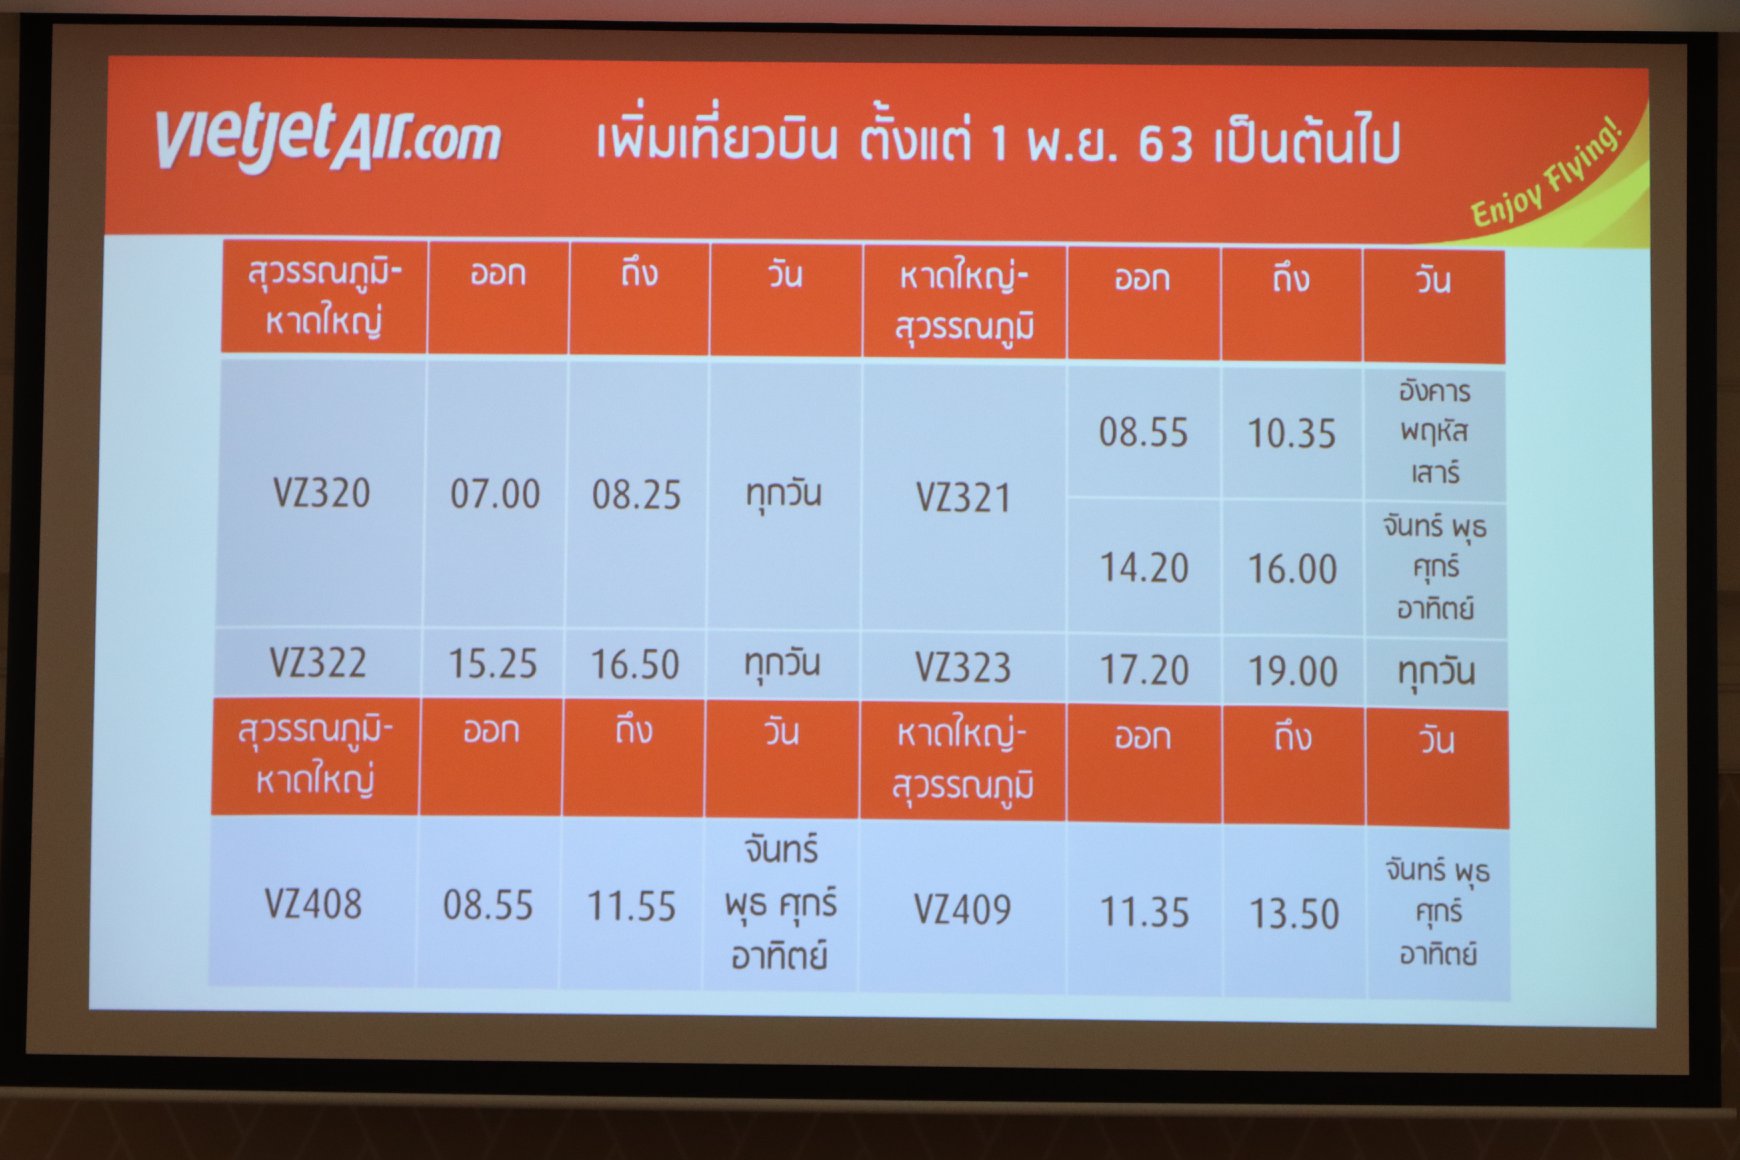 สายการบินไทยเวียตเจ็ท แถลงข่าวเปิดเส้นทางบินใหม่หาดใหญ่-เชียงราย ทางเลือกใหม่ของคนชอบบิน